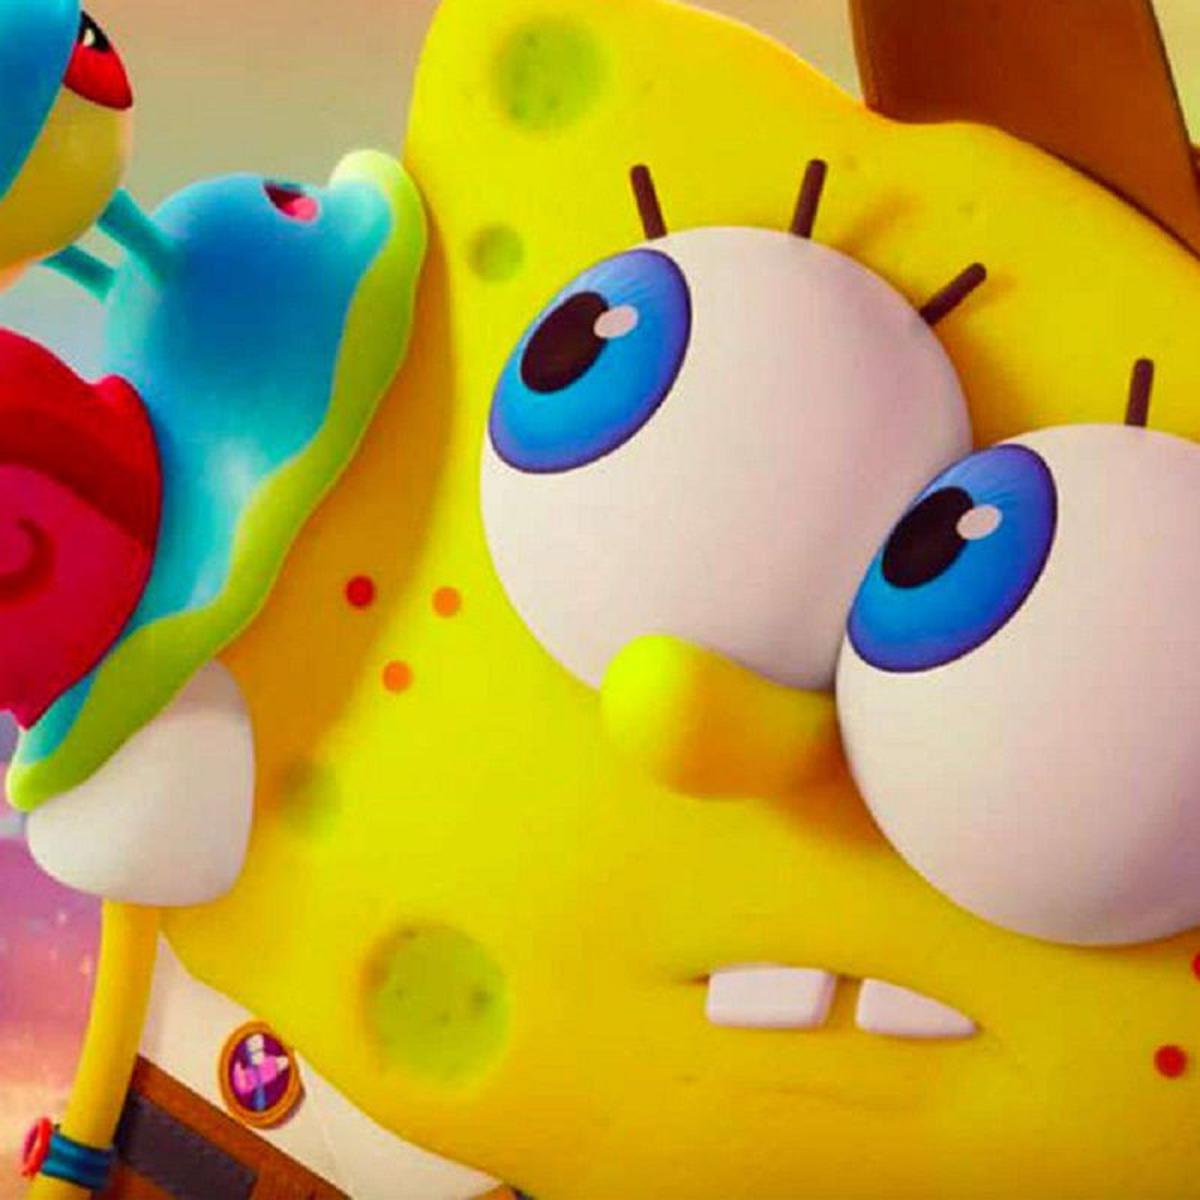 Bob Esponja Como Conocio A Gary Spongebob Squarepants Series De Nickelodeon Video Estados Unidos Fama Mag